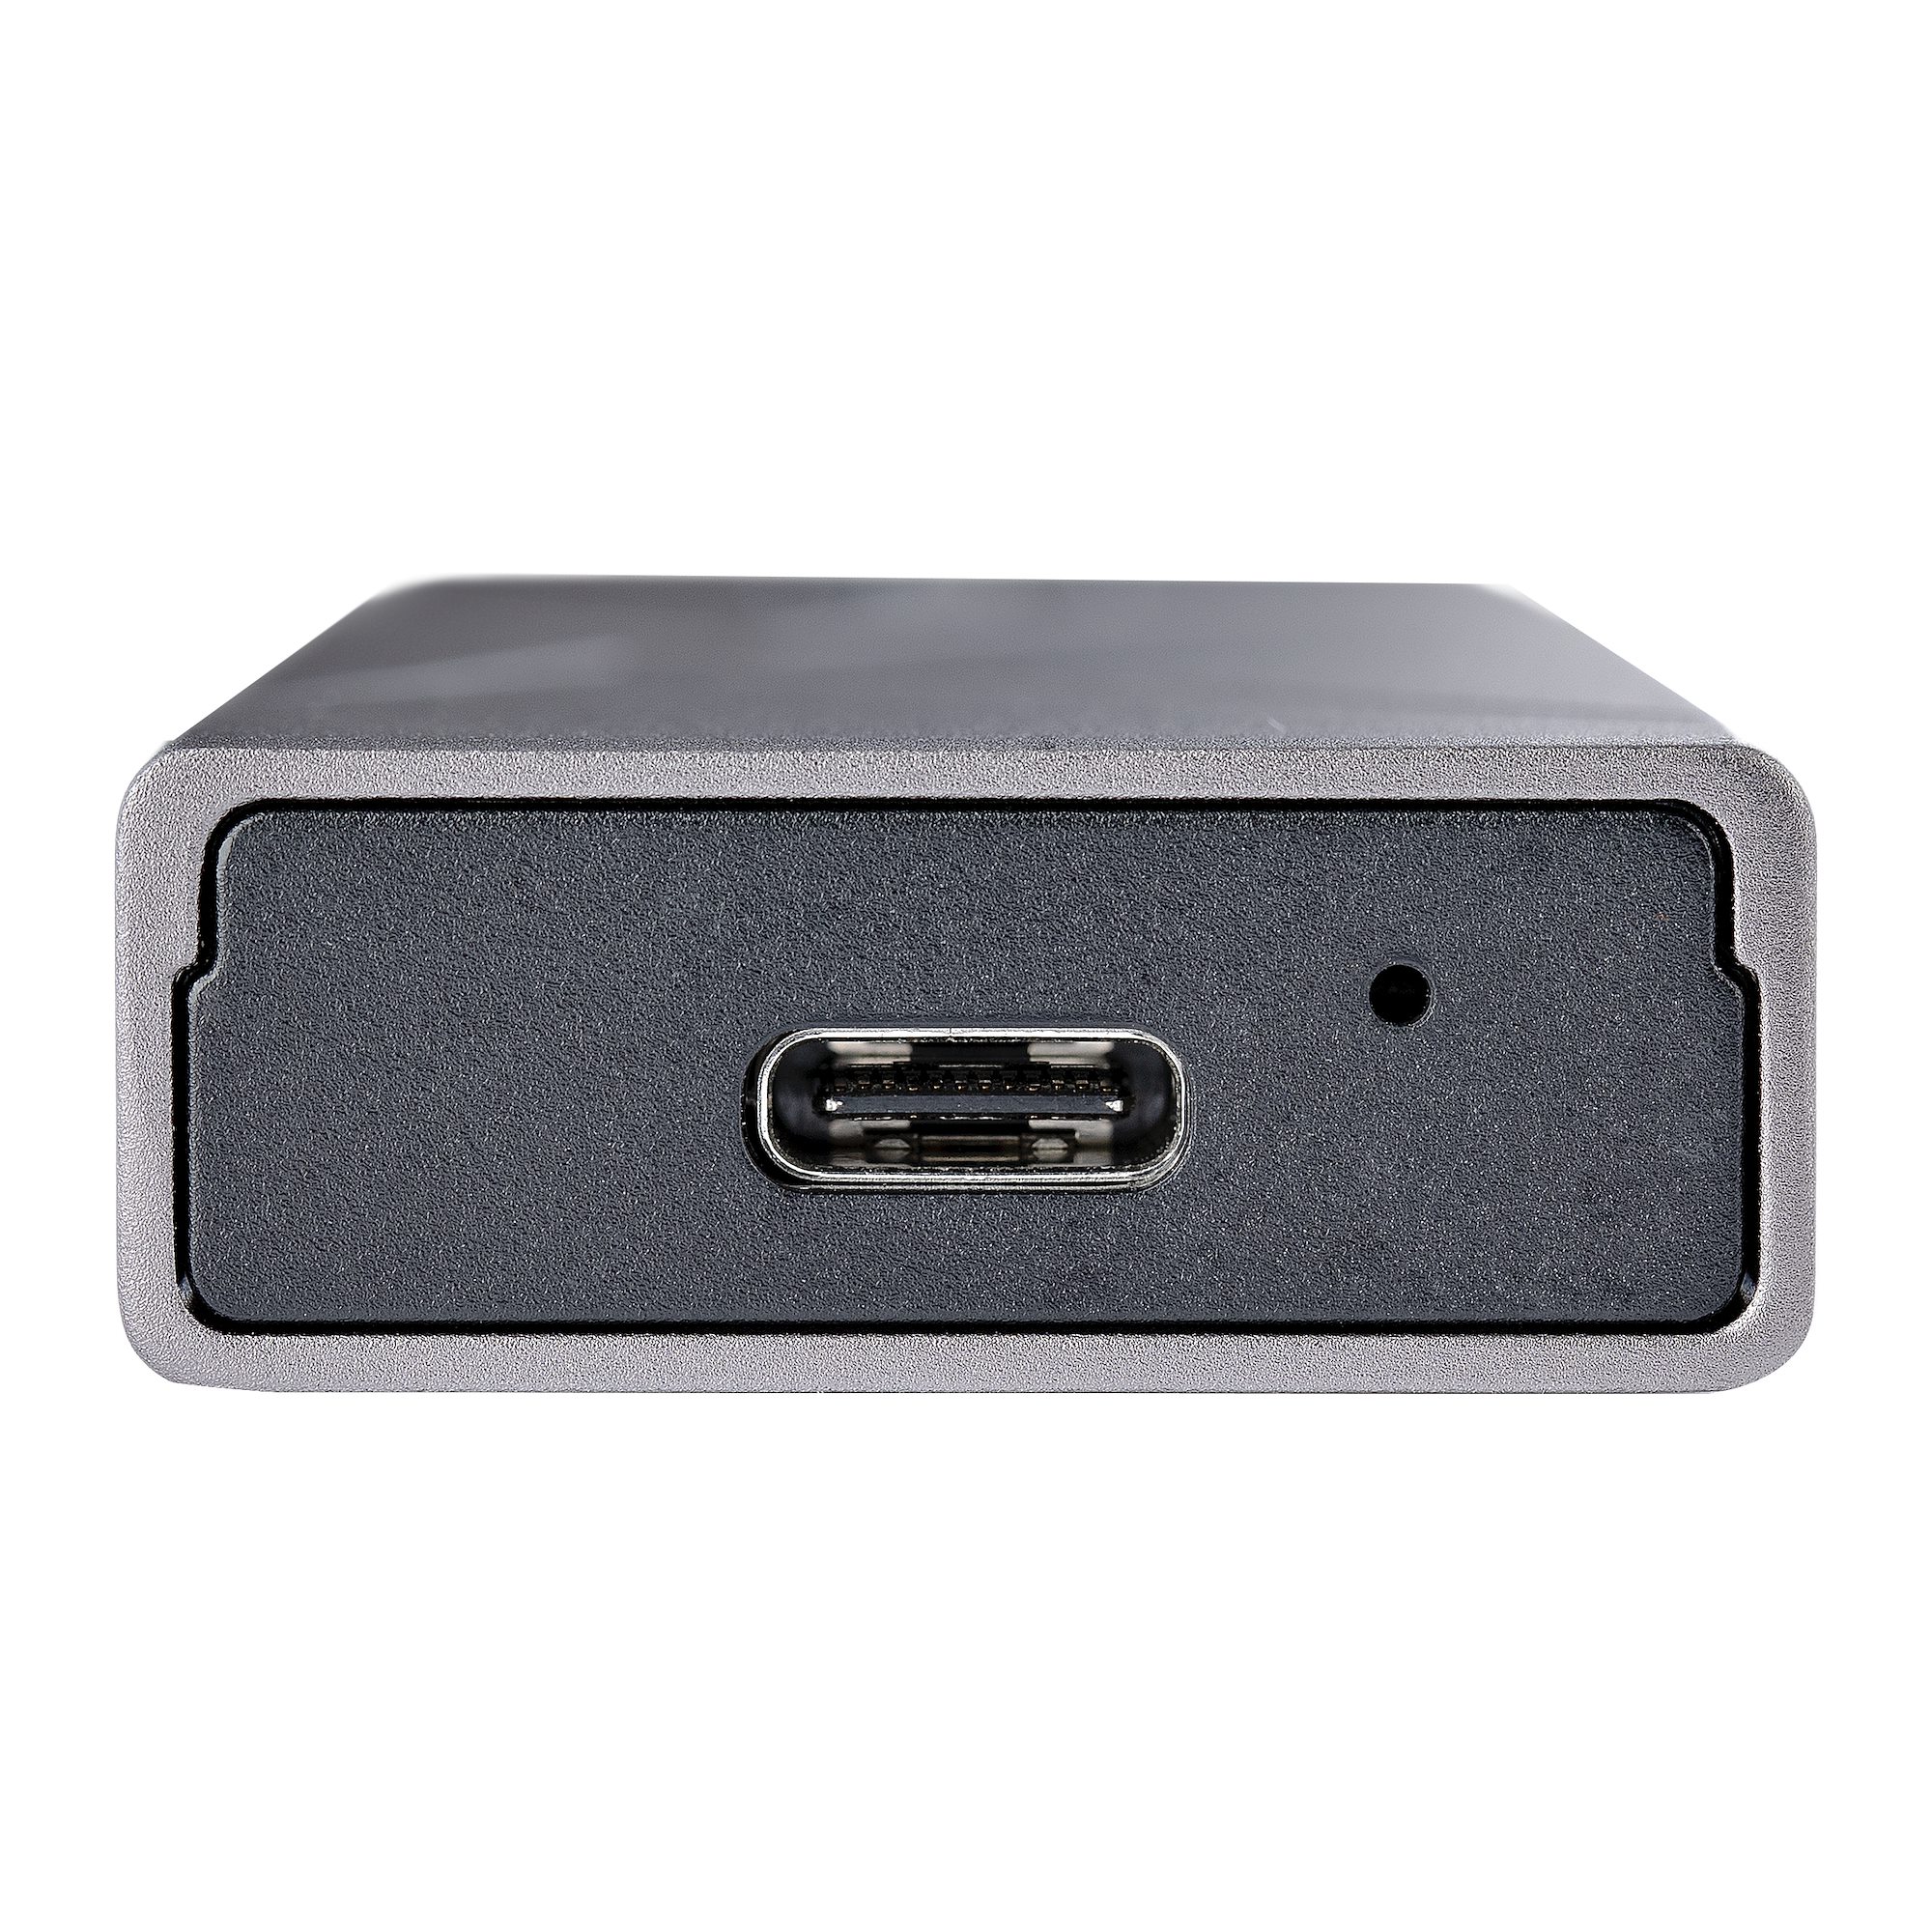 USB接続 M.2 PCIe NVMe & M.2 SATA SSD ケース - 外付けドライブケース